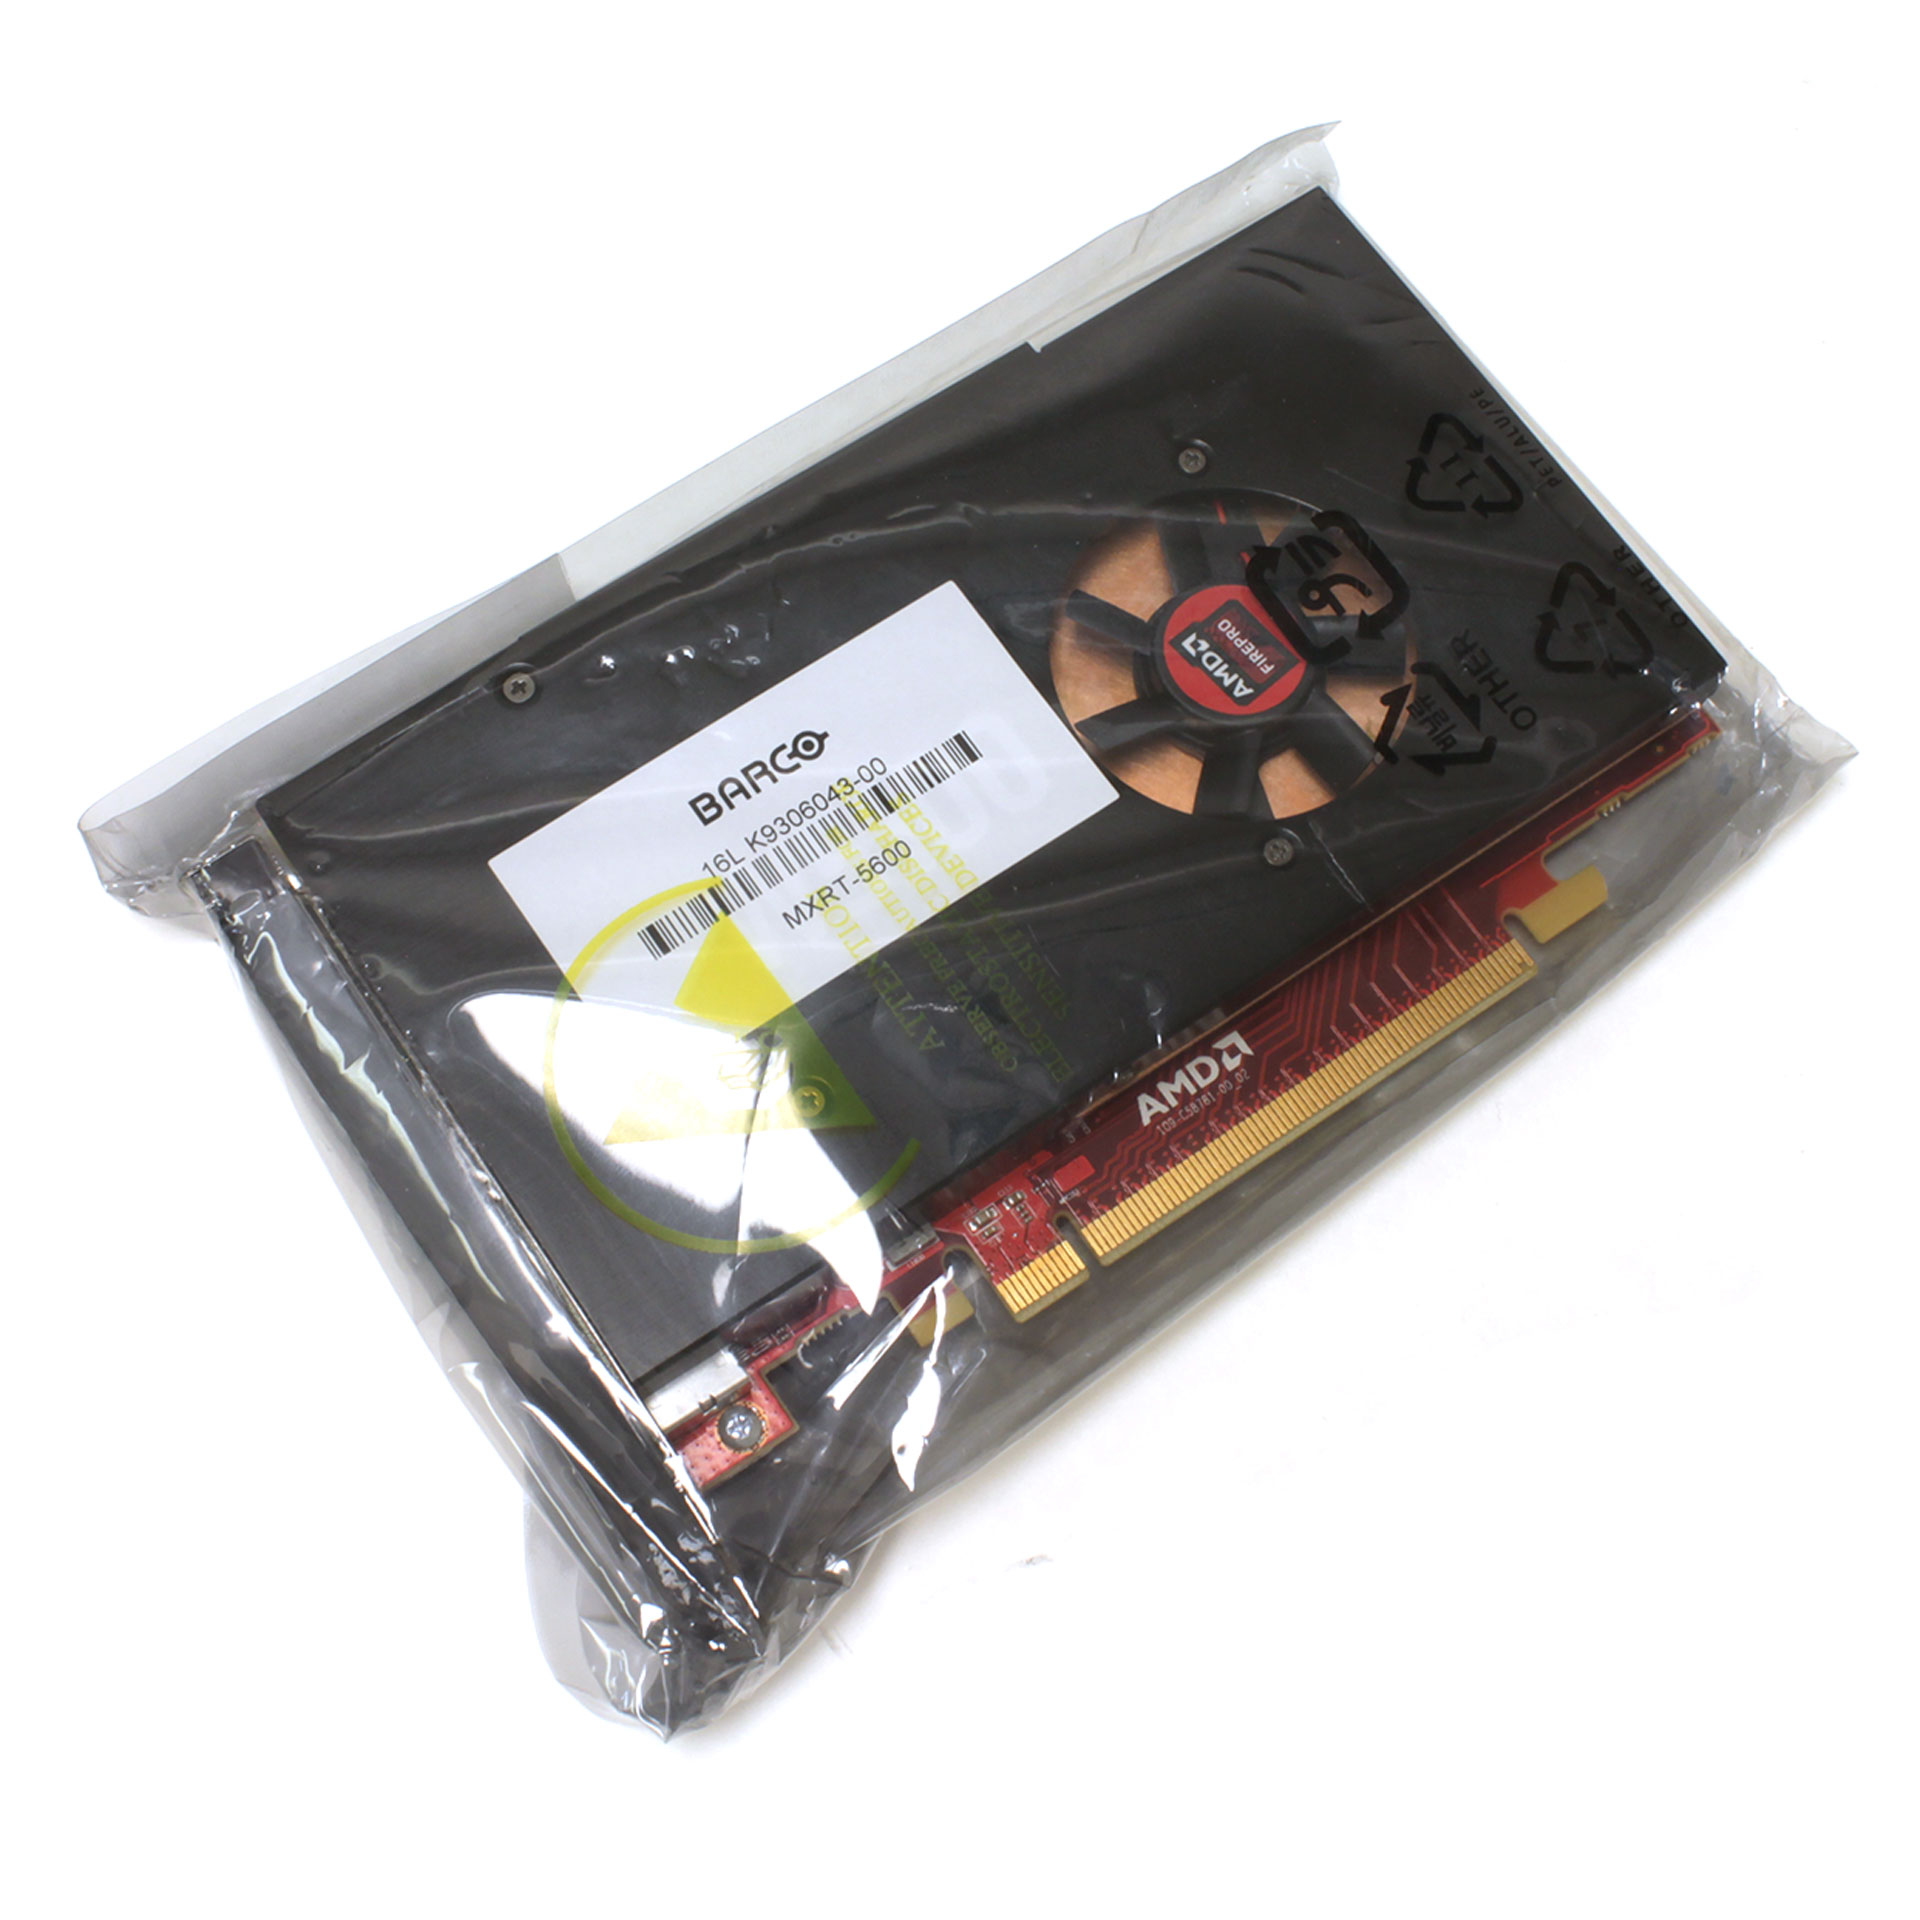 Barco MXRT-5600 4GB GDDR5 3D PCI-e x16 4-head 4X DP K9306043-00 - Click Image to Close